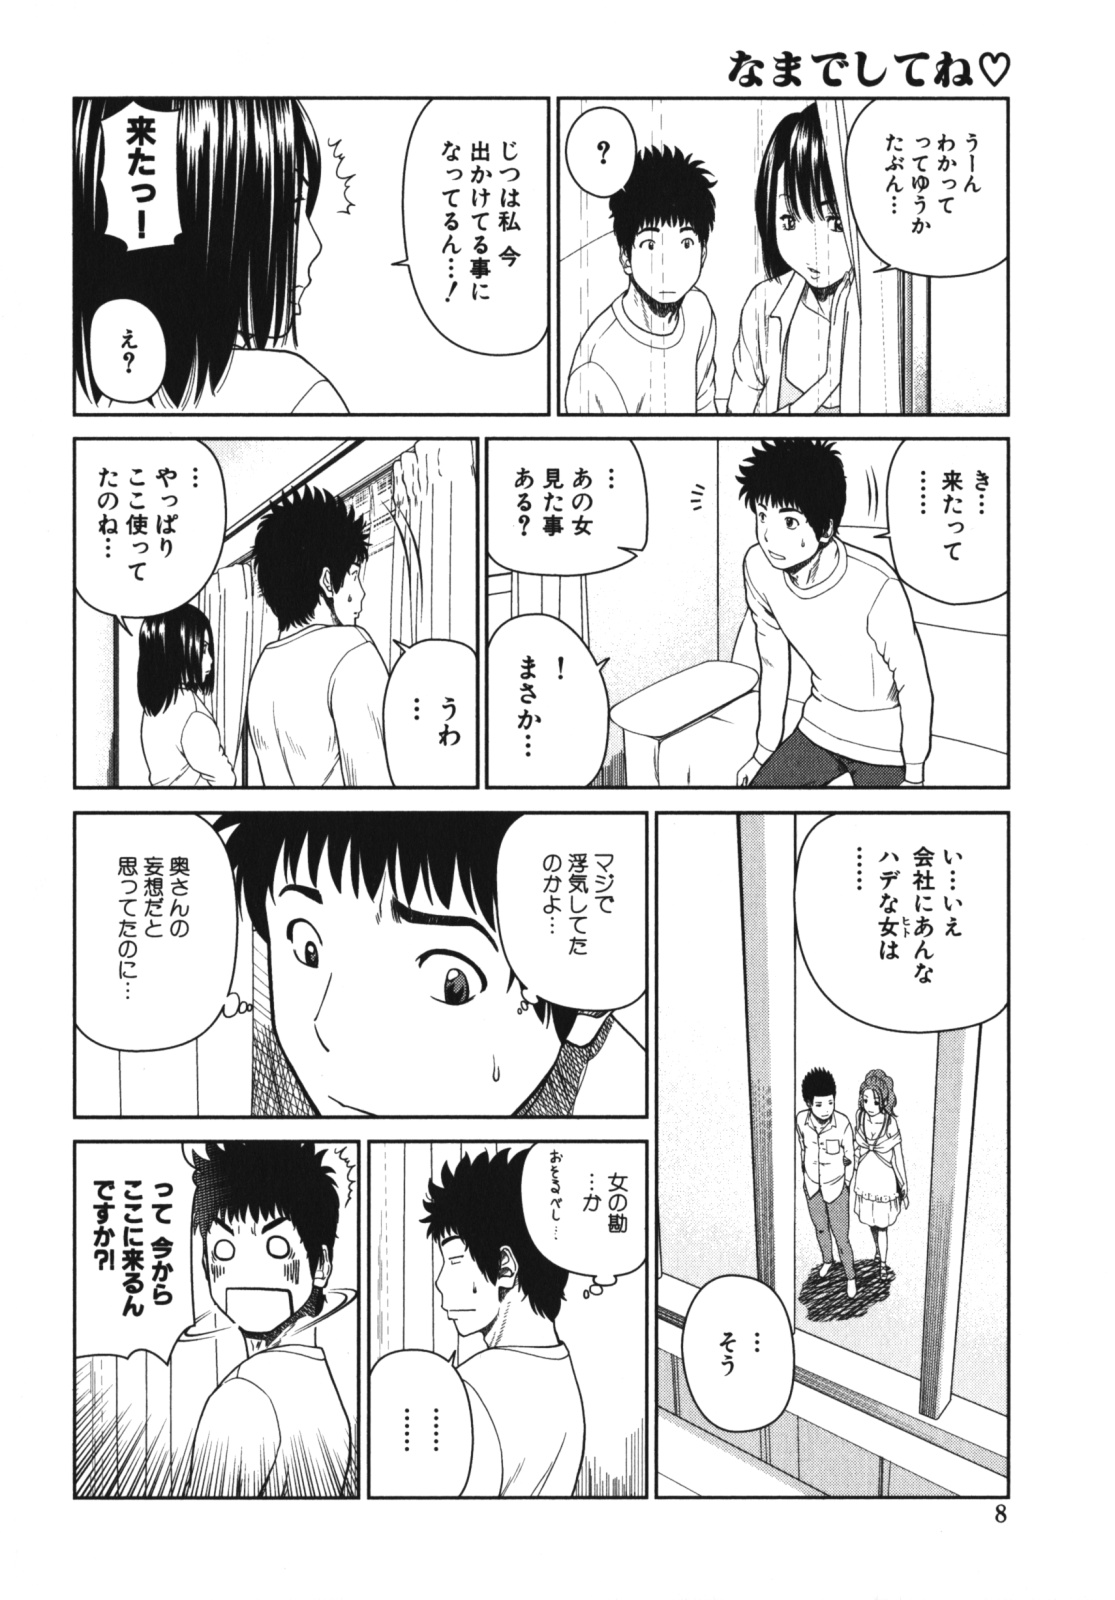 [Anthology] Geki Yaba Vol.4 - Namade Shitene page 11 full